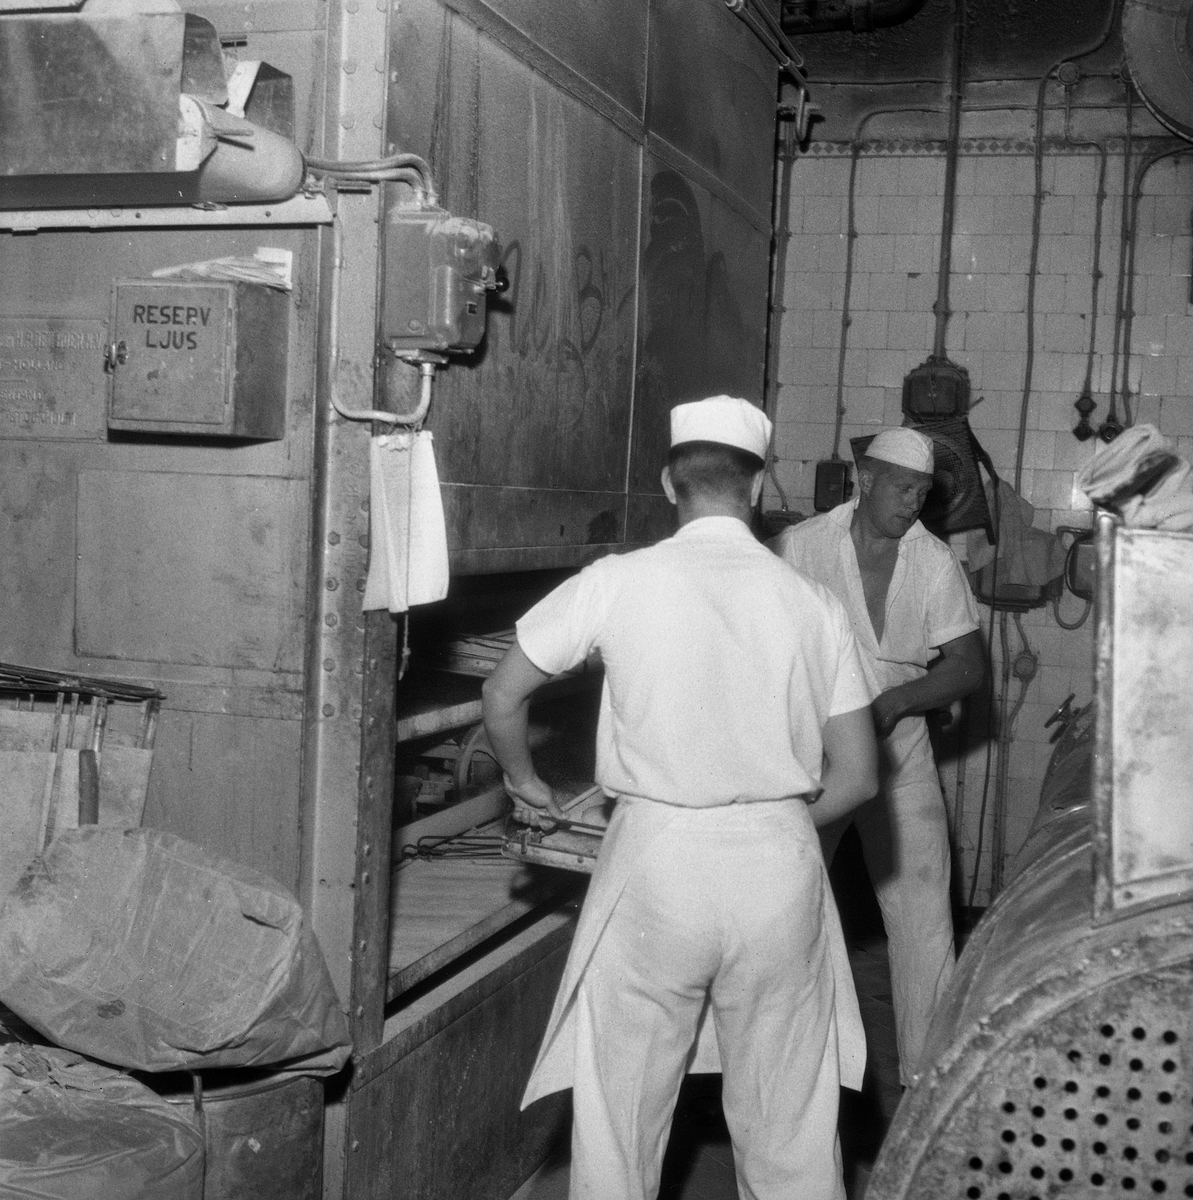 Värmeböljan rena svalkan. På jobbet har vi 50 grader. 
15 juli 1959.